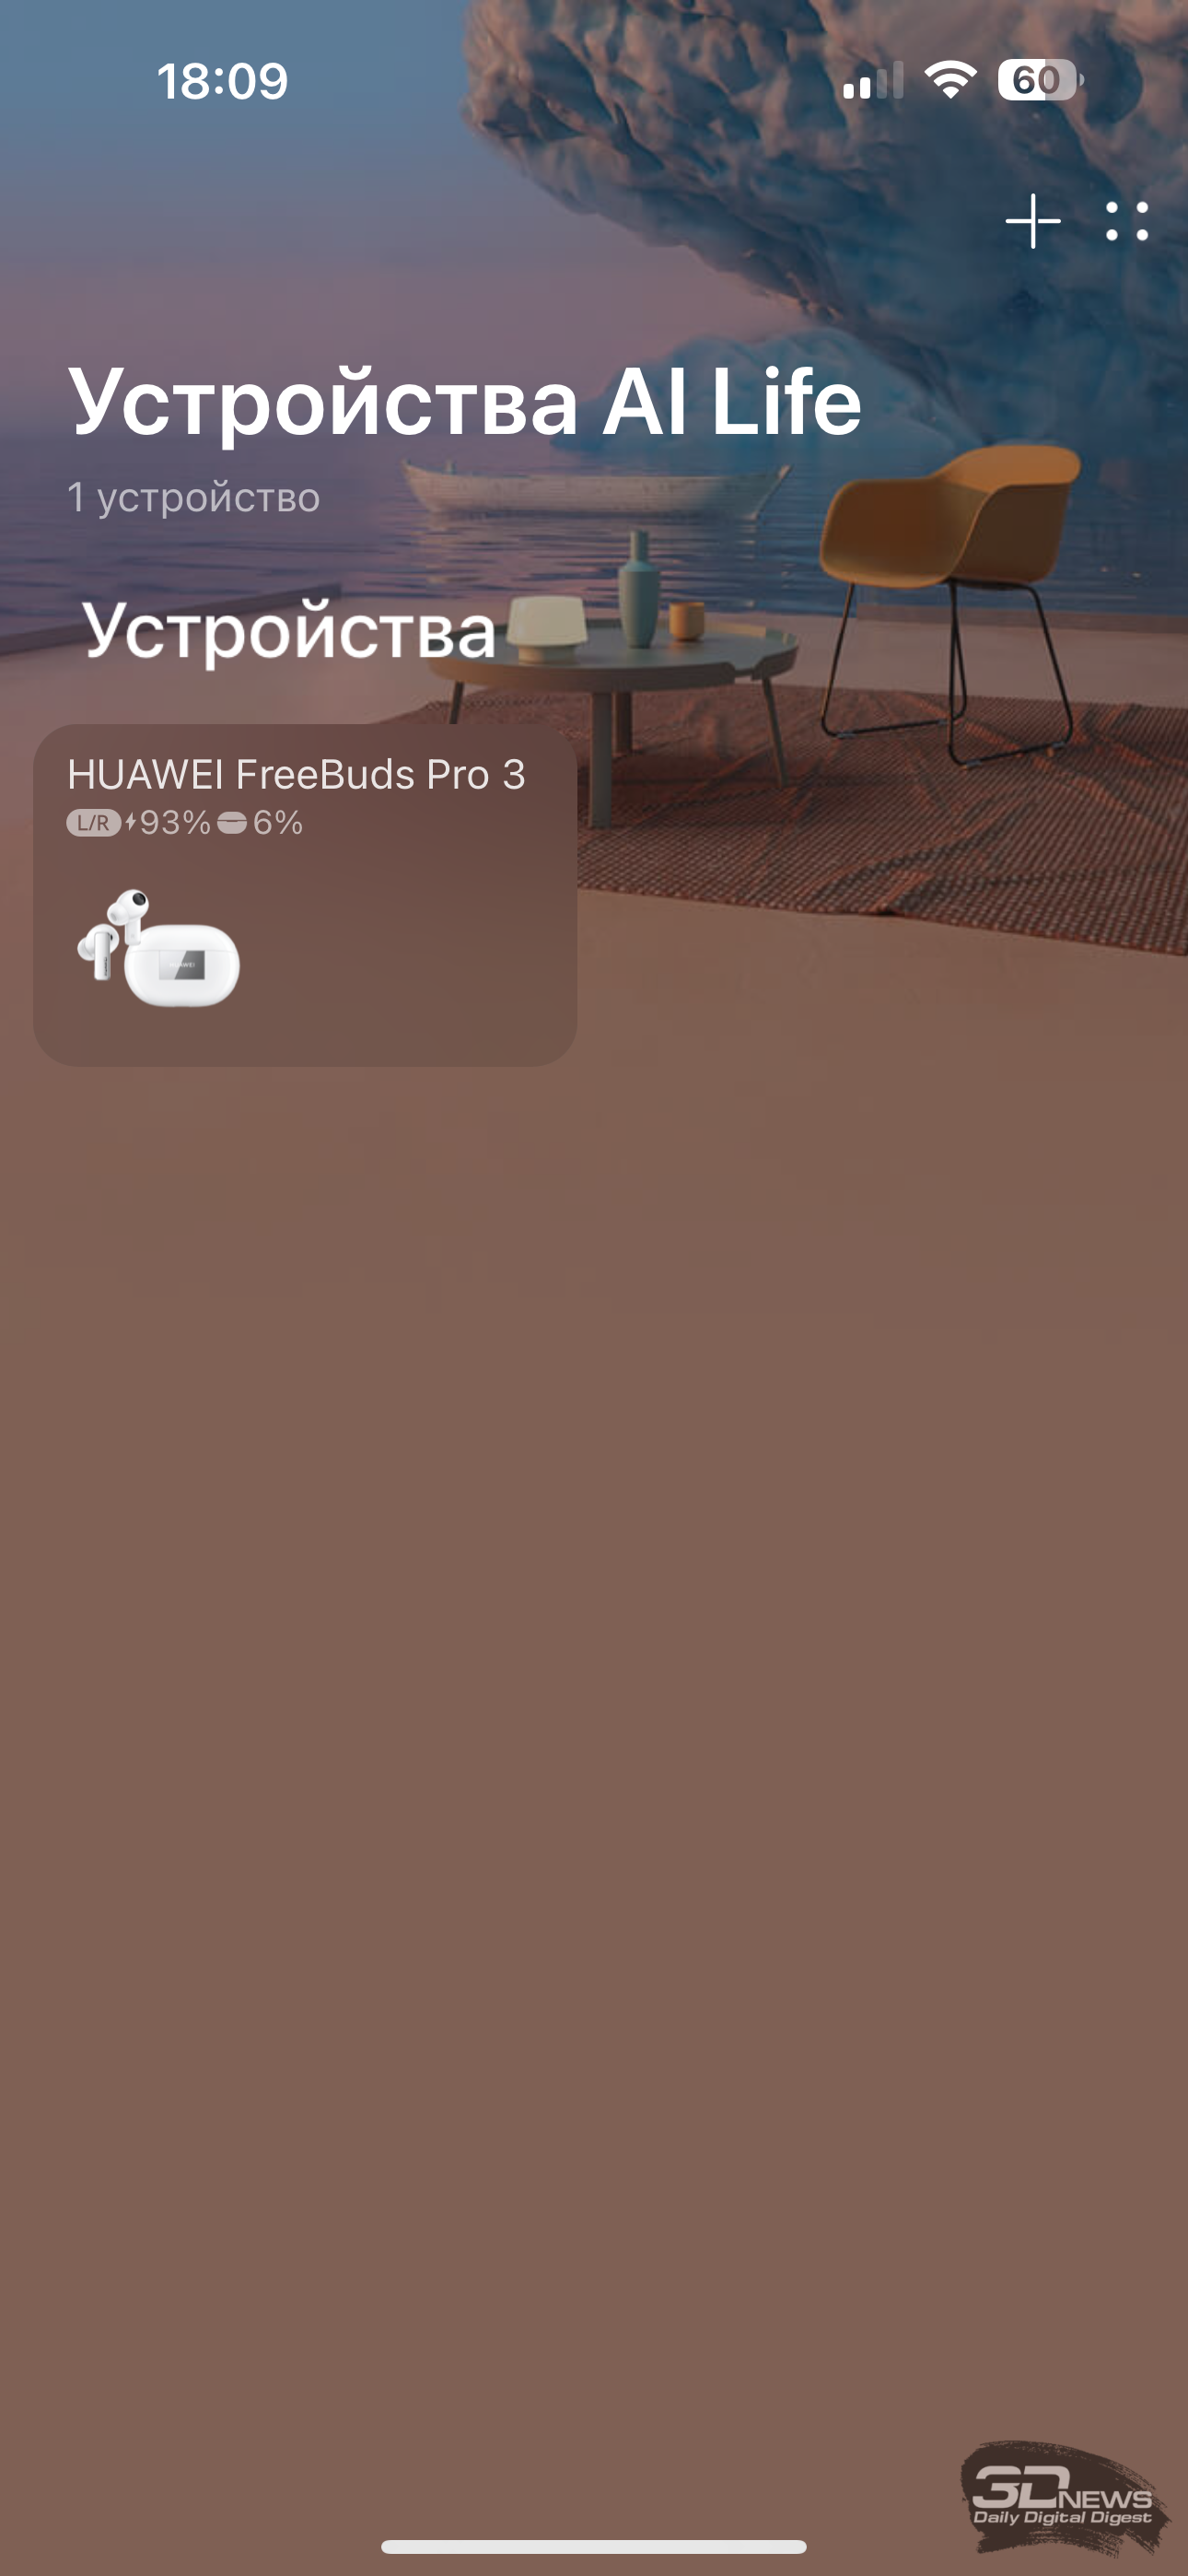 Обзор TWS-наушников Huawei FreeBuds Pro 3 - Российская газета